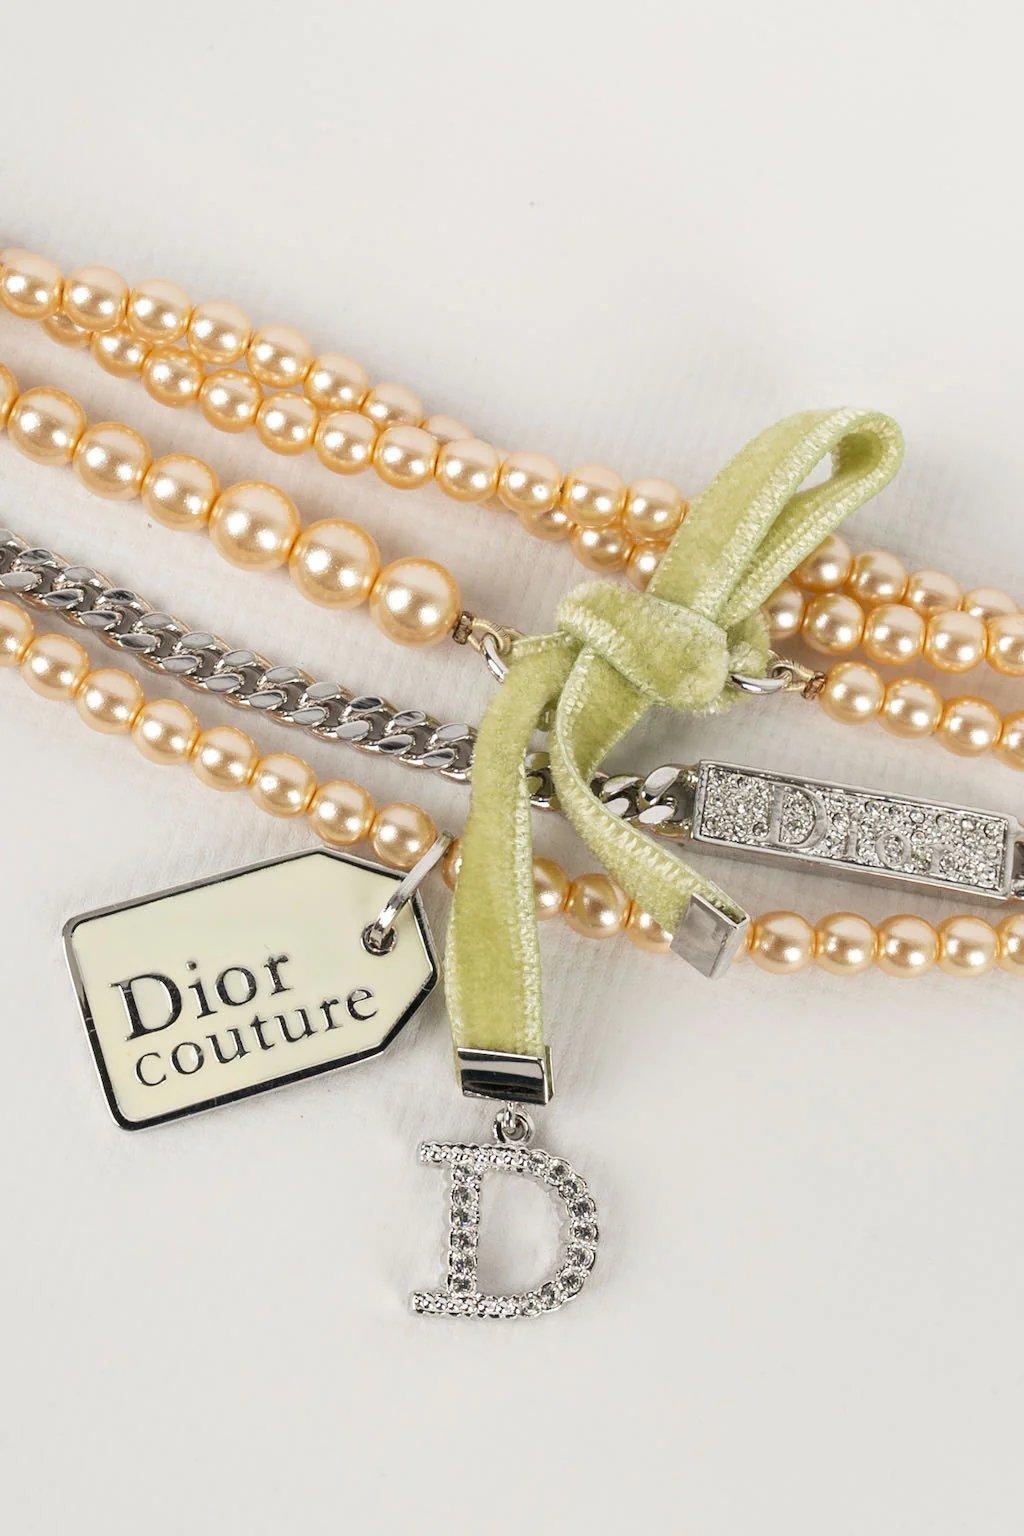 Dior -Bracelet multi-rangs en perles et métal argenté.

Informations complémentaires :
Dimensions : Longueur : de 16 à 21 cm 
Hauteur : 4 cm
Condit : Très bon état.
Numéro de référence du vendeur : BRA58